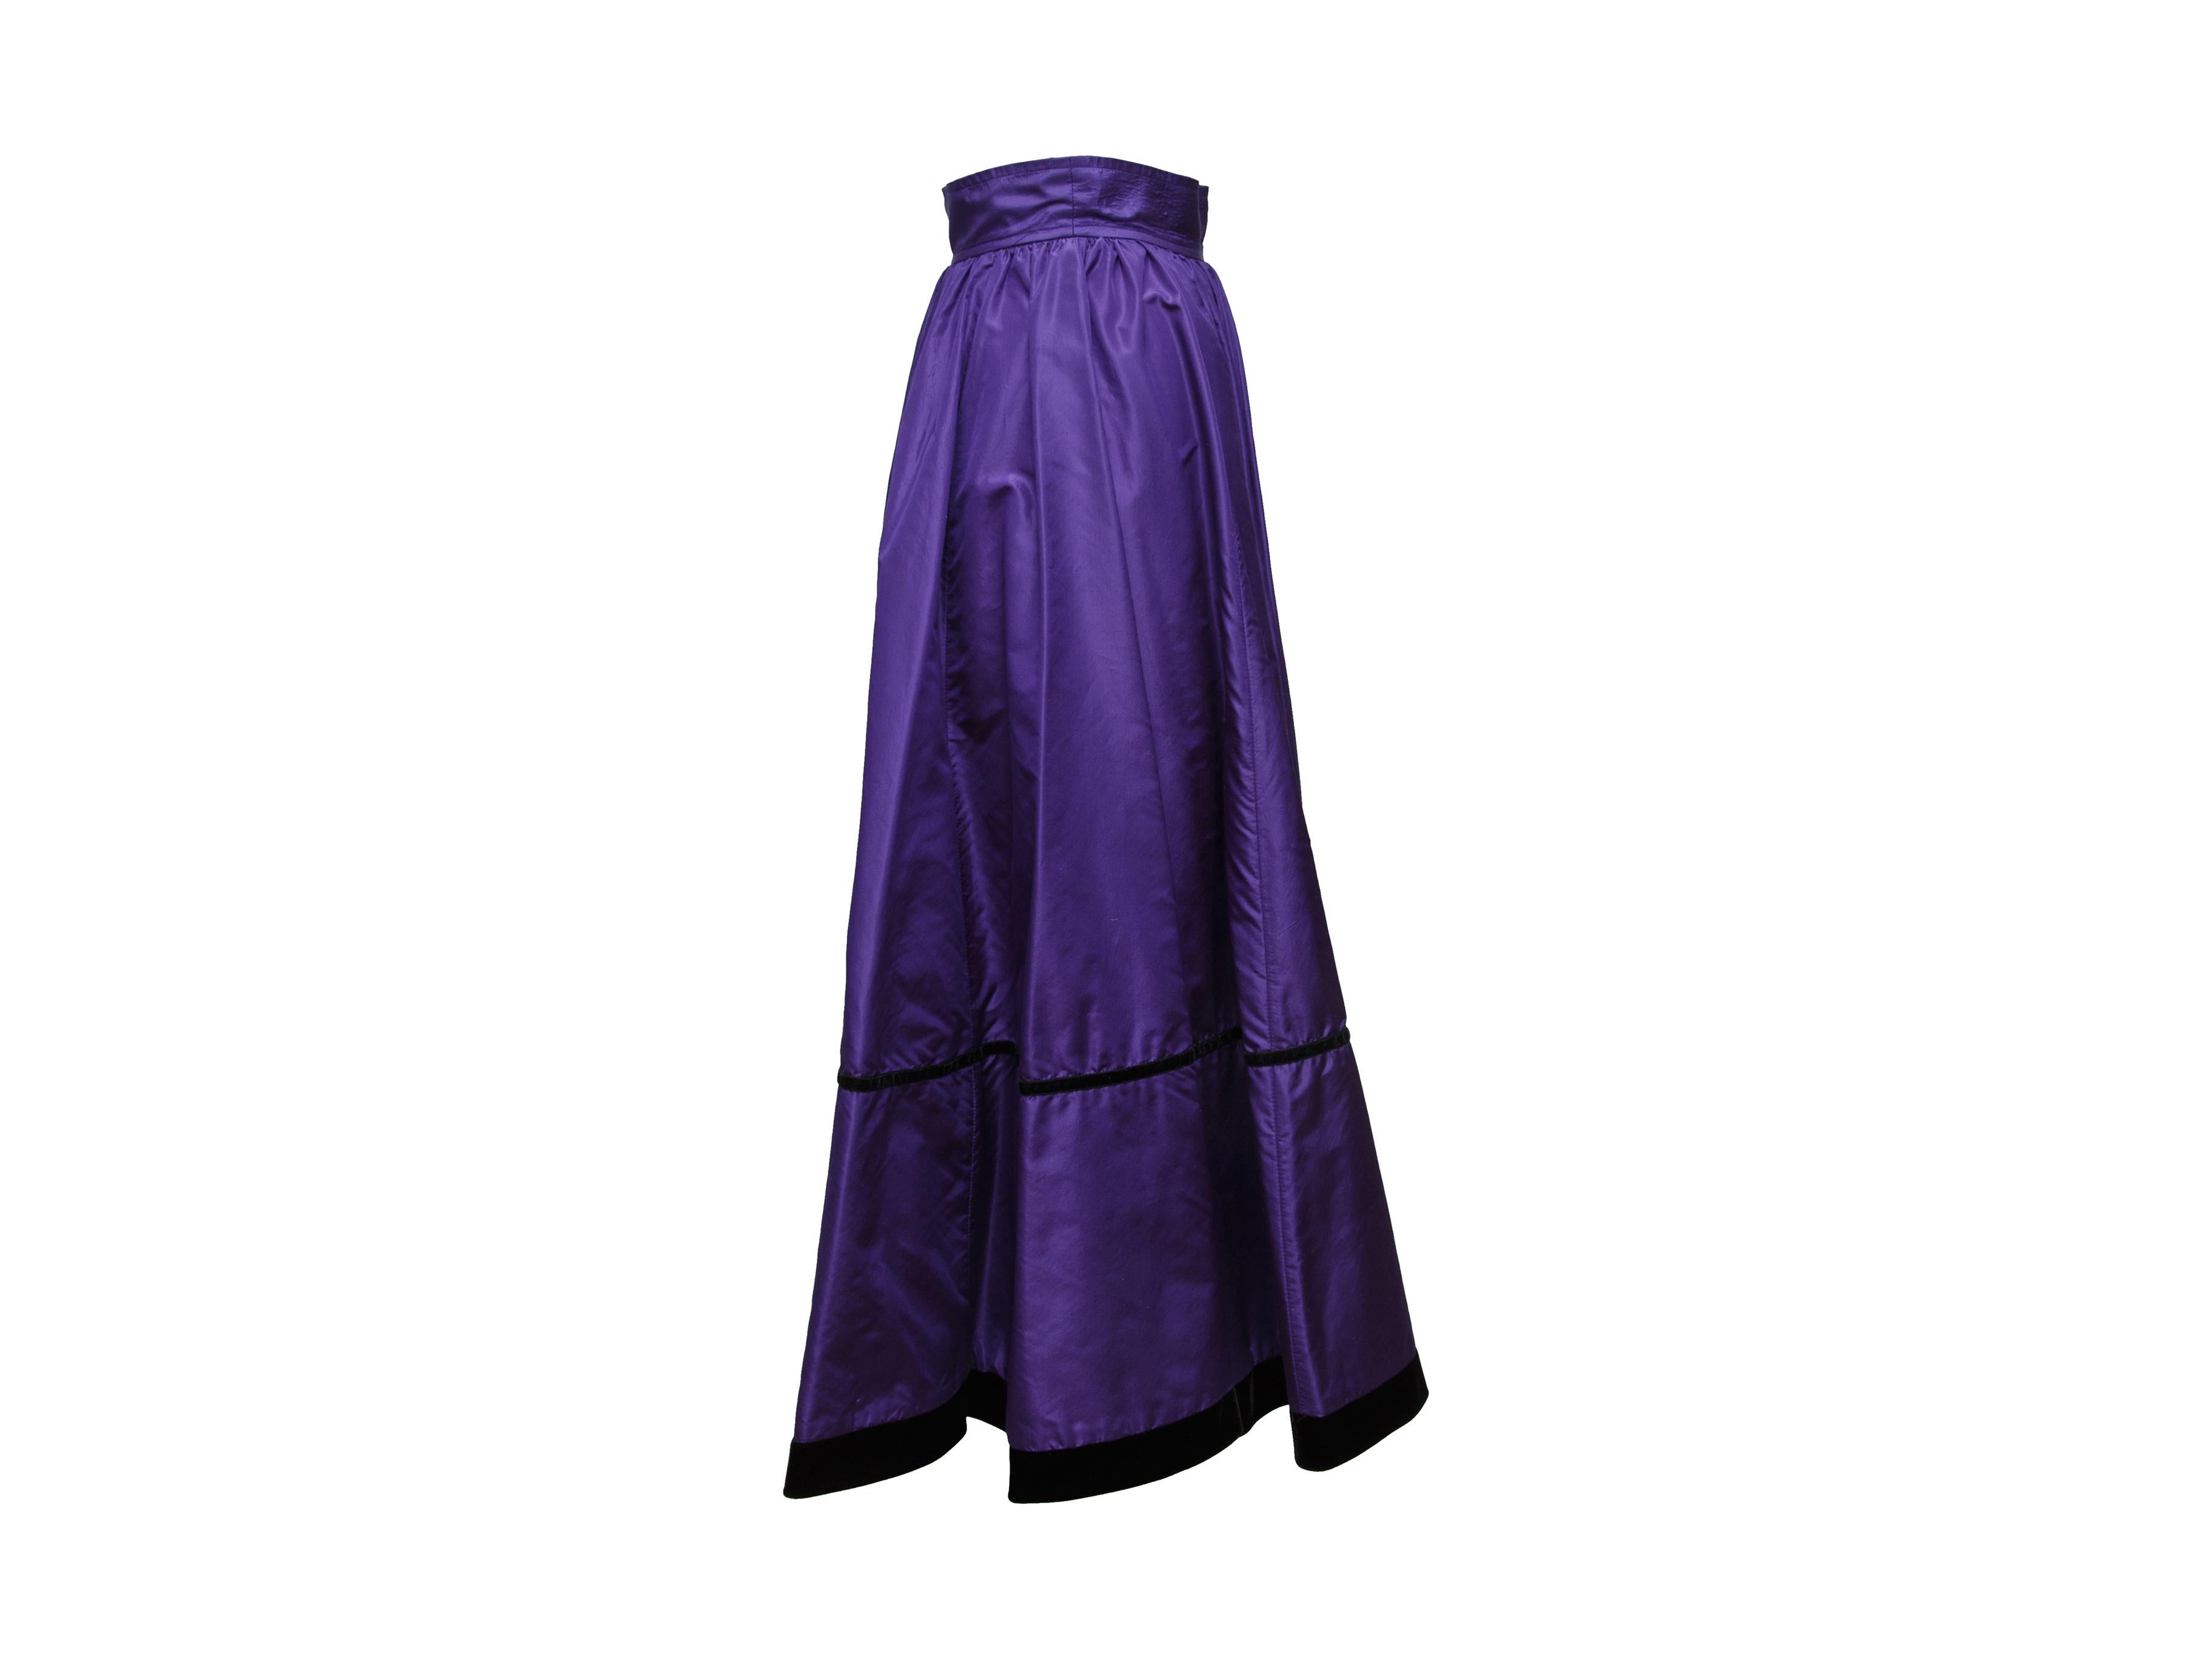 Product details: Vintage purple midi skirt by Saint Laurent. Black velvet trim throughout. Bow accent at back. Designer size 34. 24